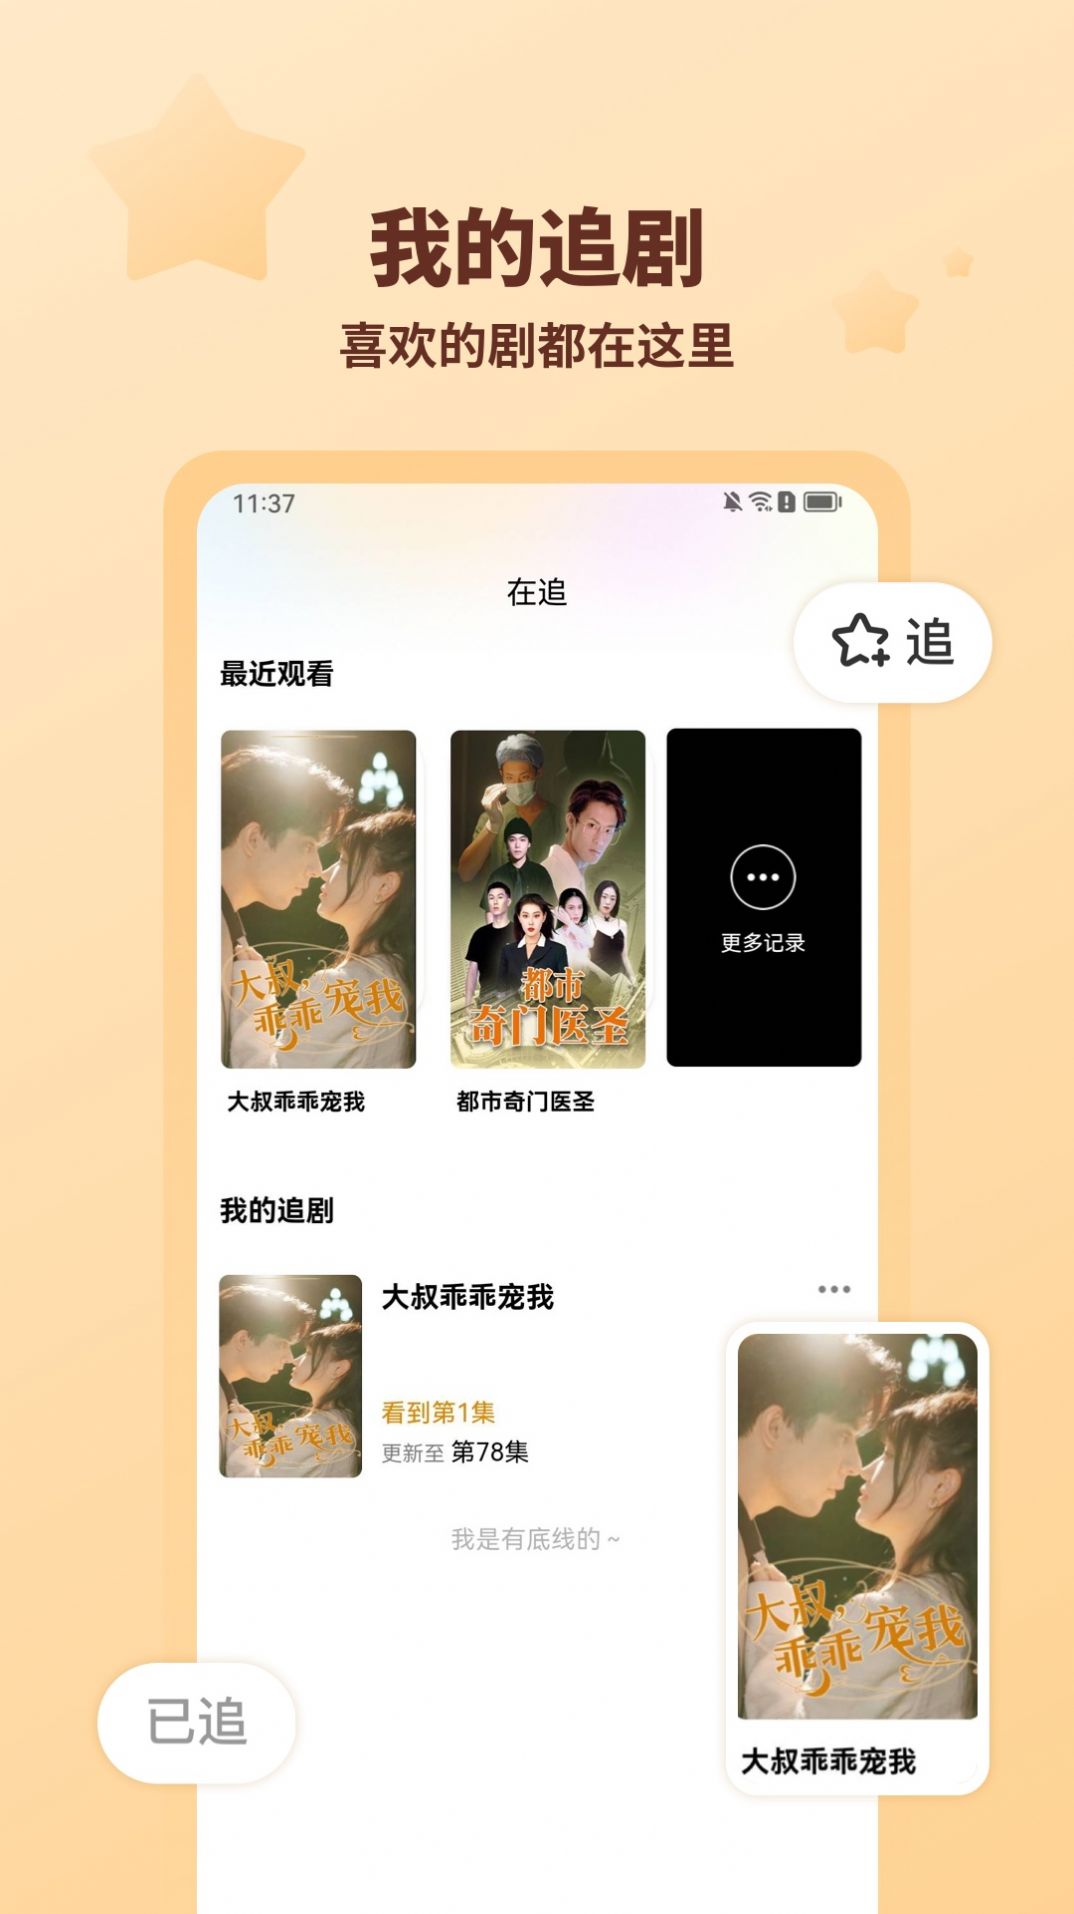 海马剧场短剧免费剧集大全app最新版图片1